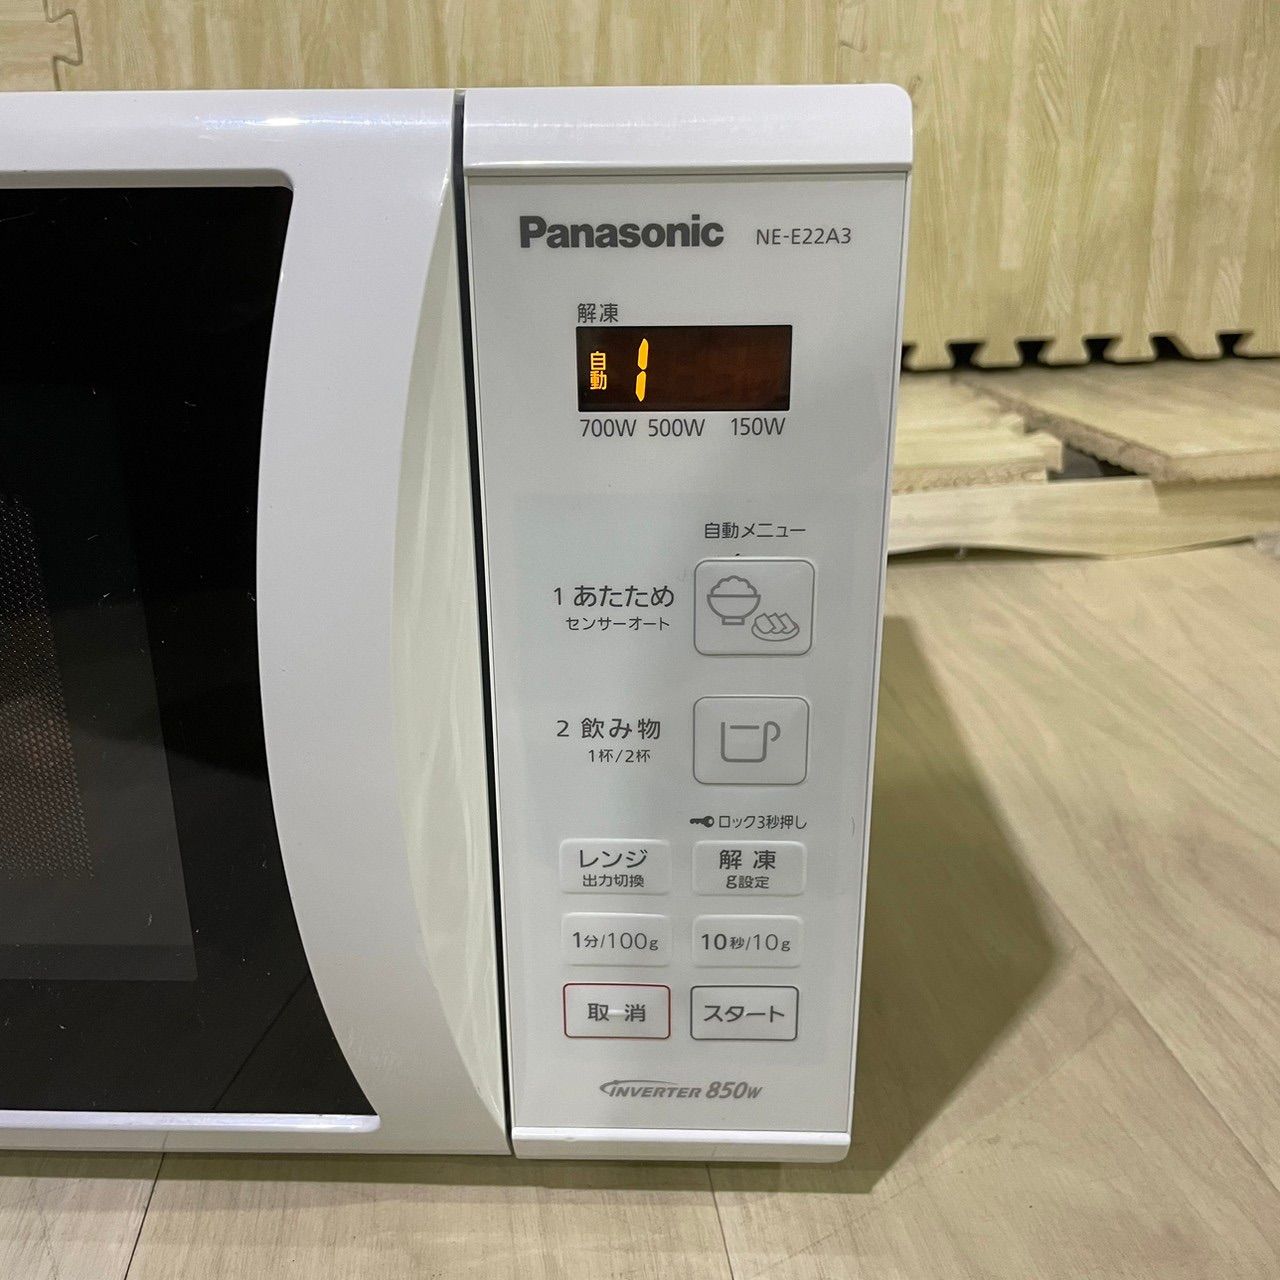 Panasonic 電子レンジ NE-E22A3-W - コアラショップ - メルカリ